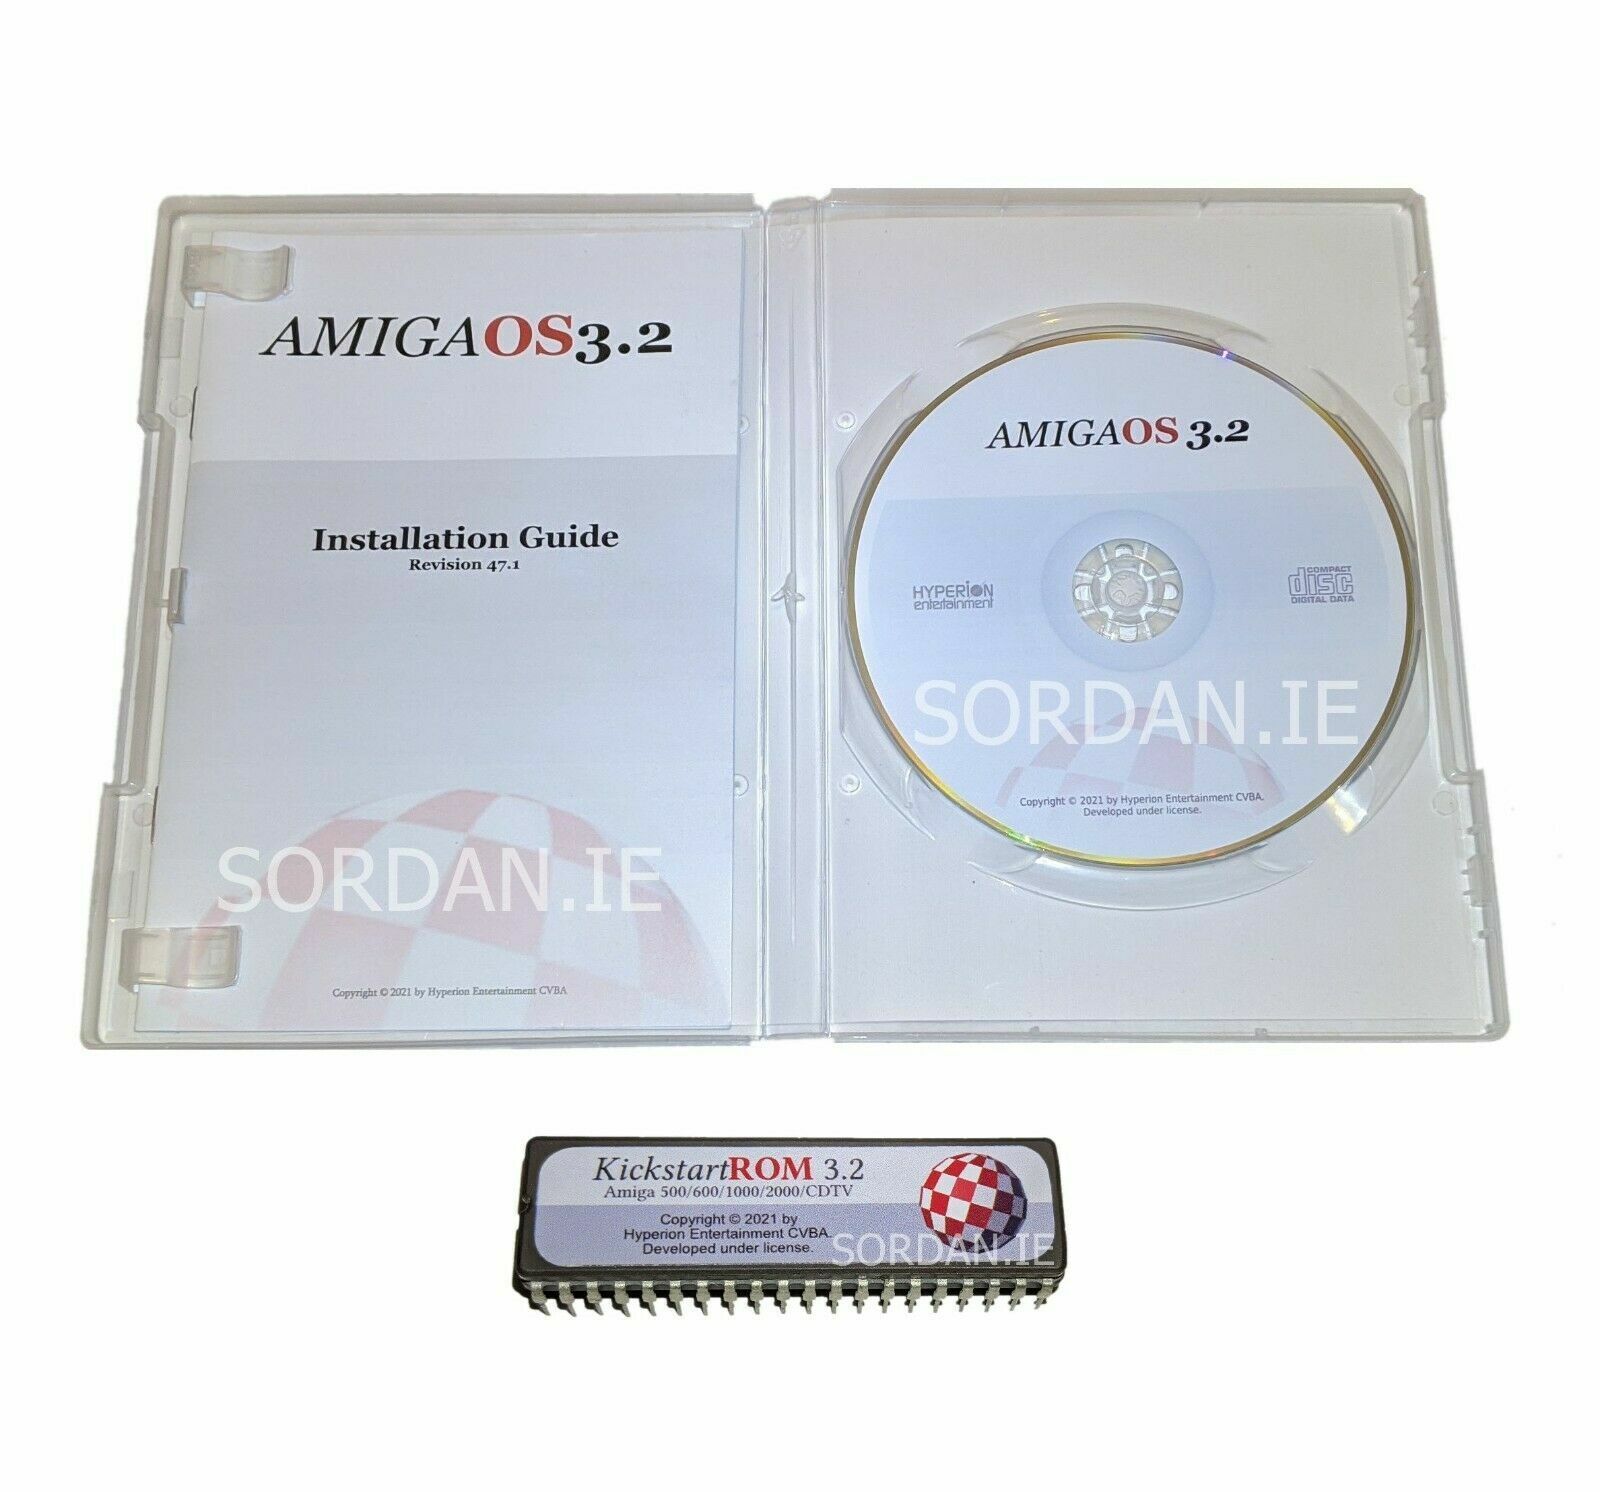 New Amiga Workbench OS 3.2 CD + Kickstart ROM 3.2.2 for Amiga 500 600 2000 1049